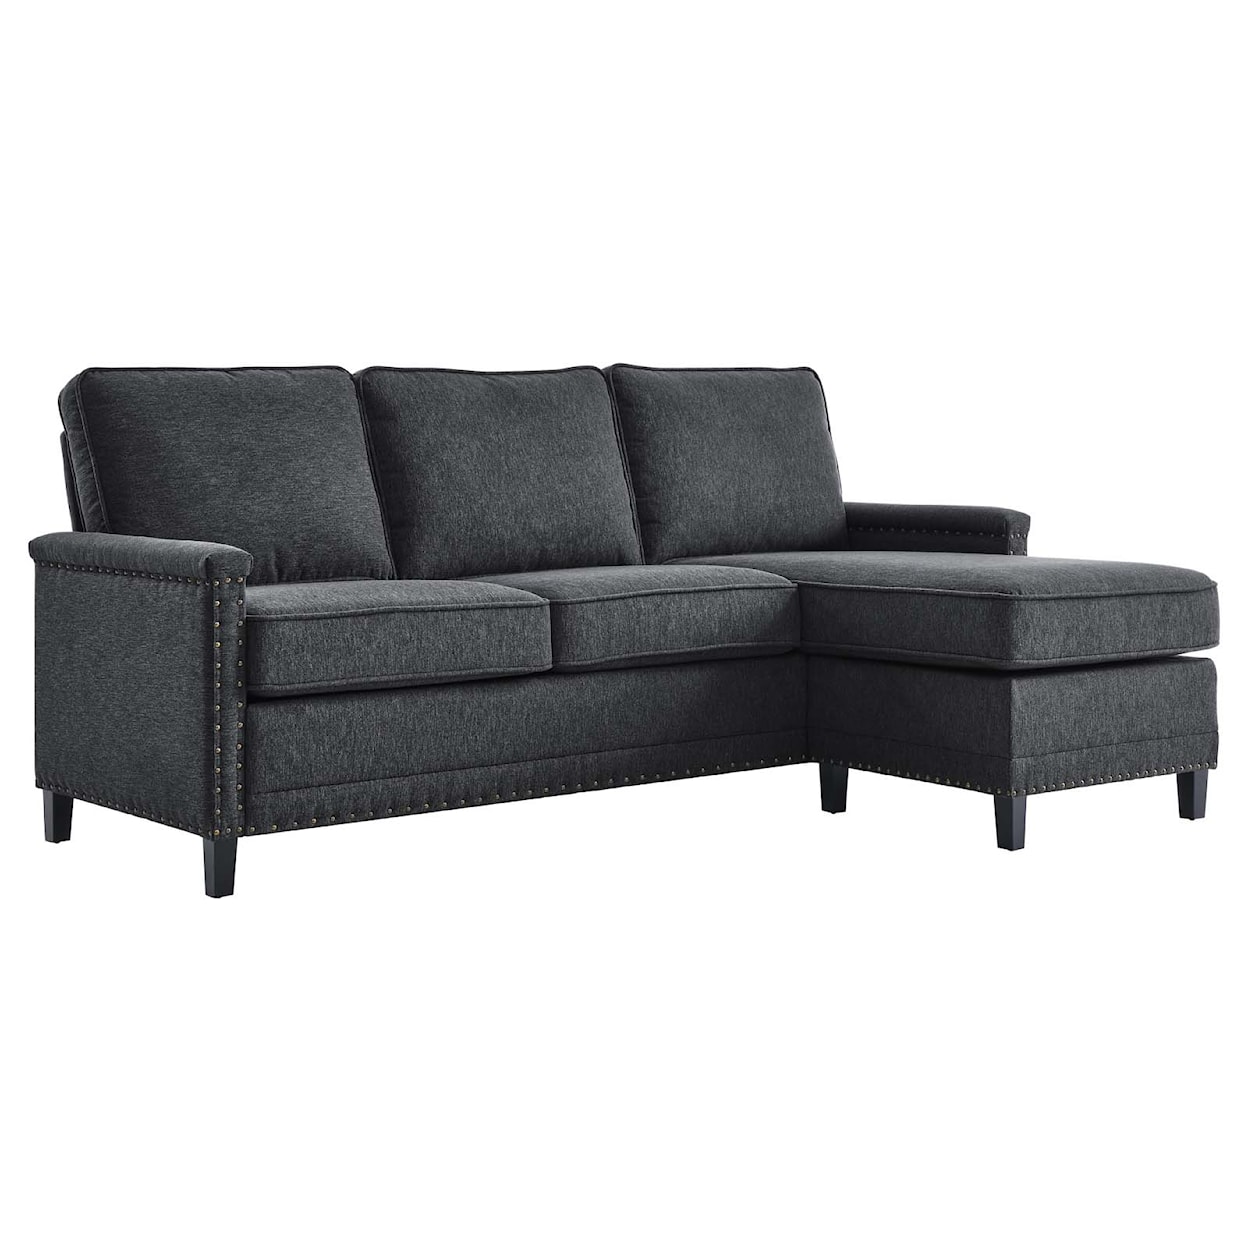 Modway Ashton Sectional Sofa